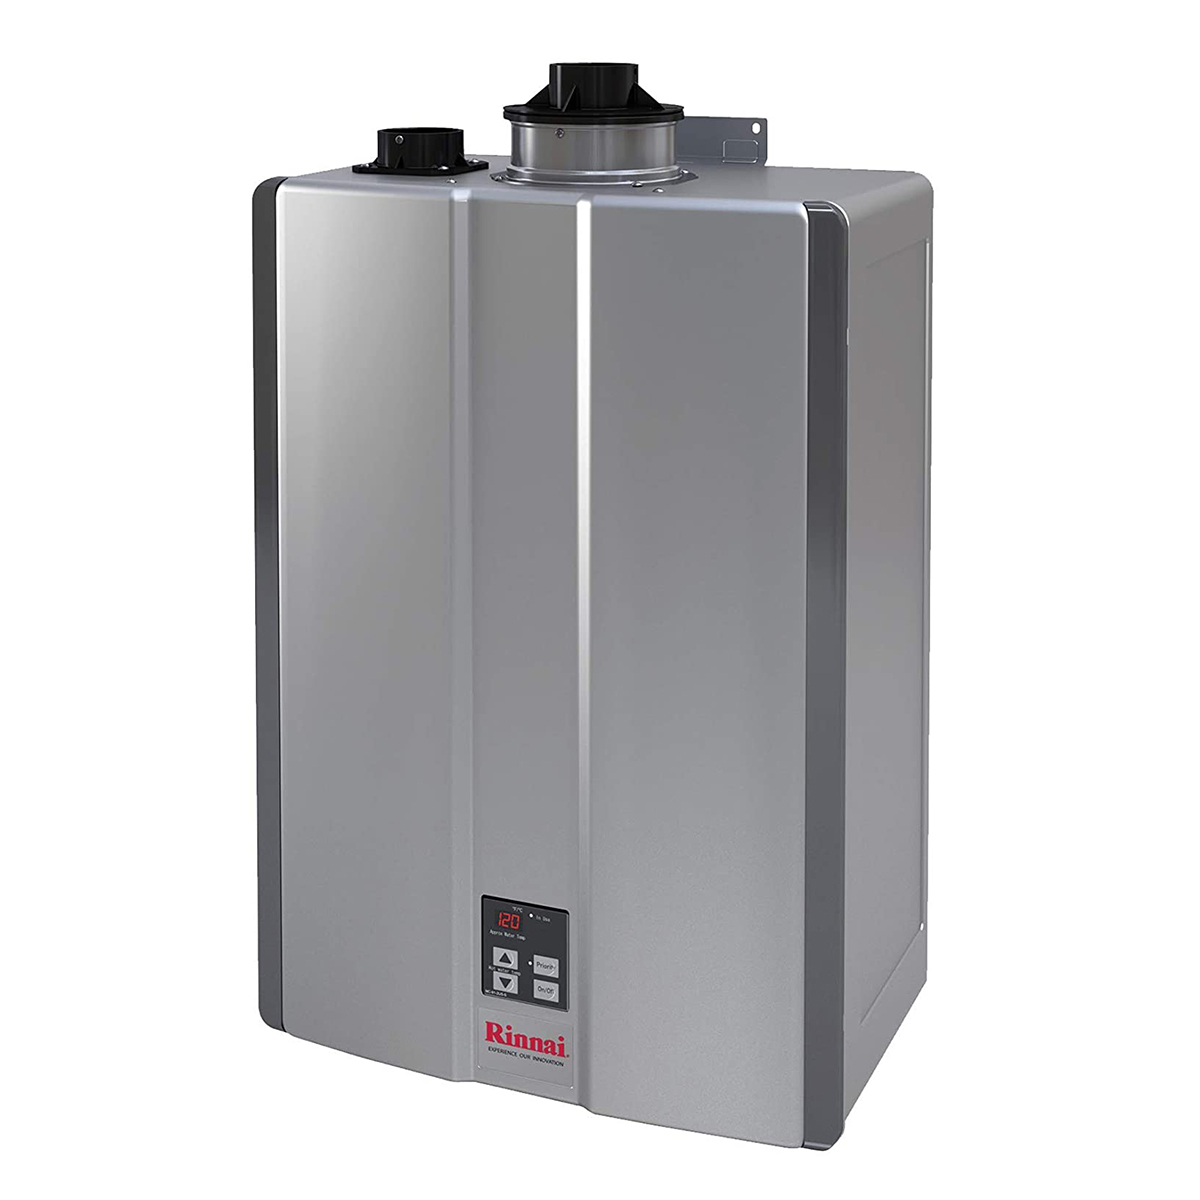 Rinnai RU199iN High-Efficiency Tankless Water Heater